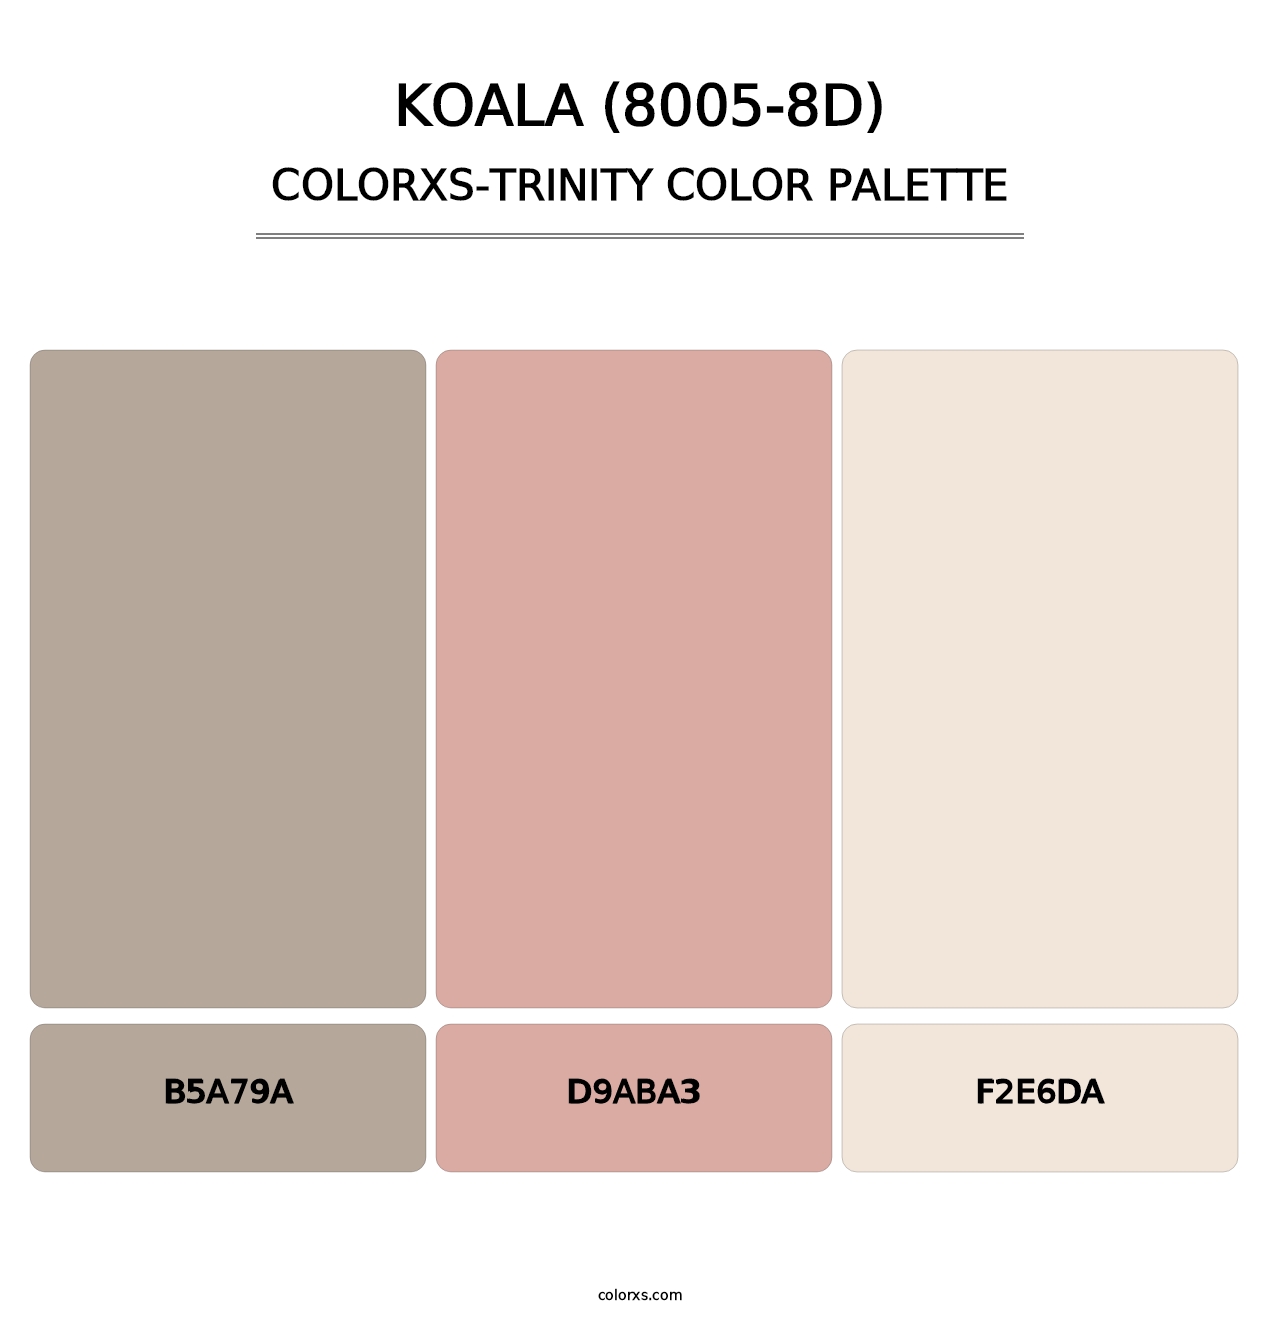 Koala (8005-8D) - Colorxs Trinity Palette